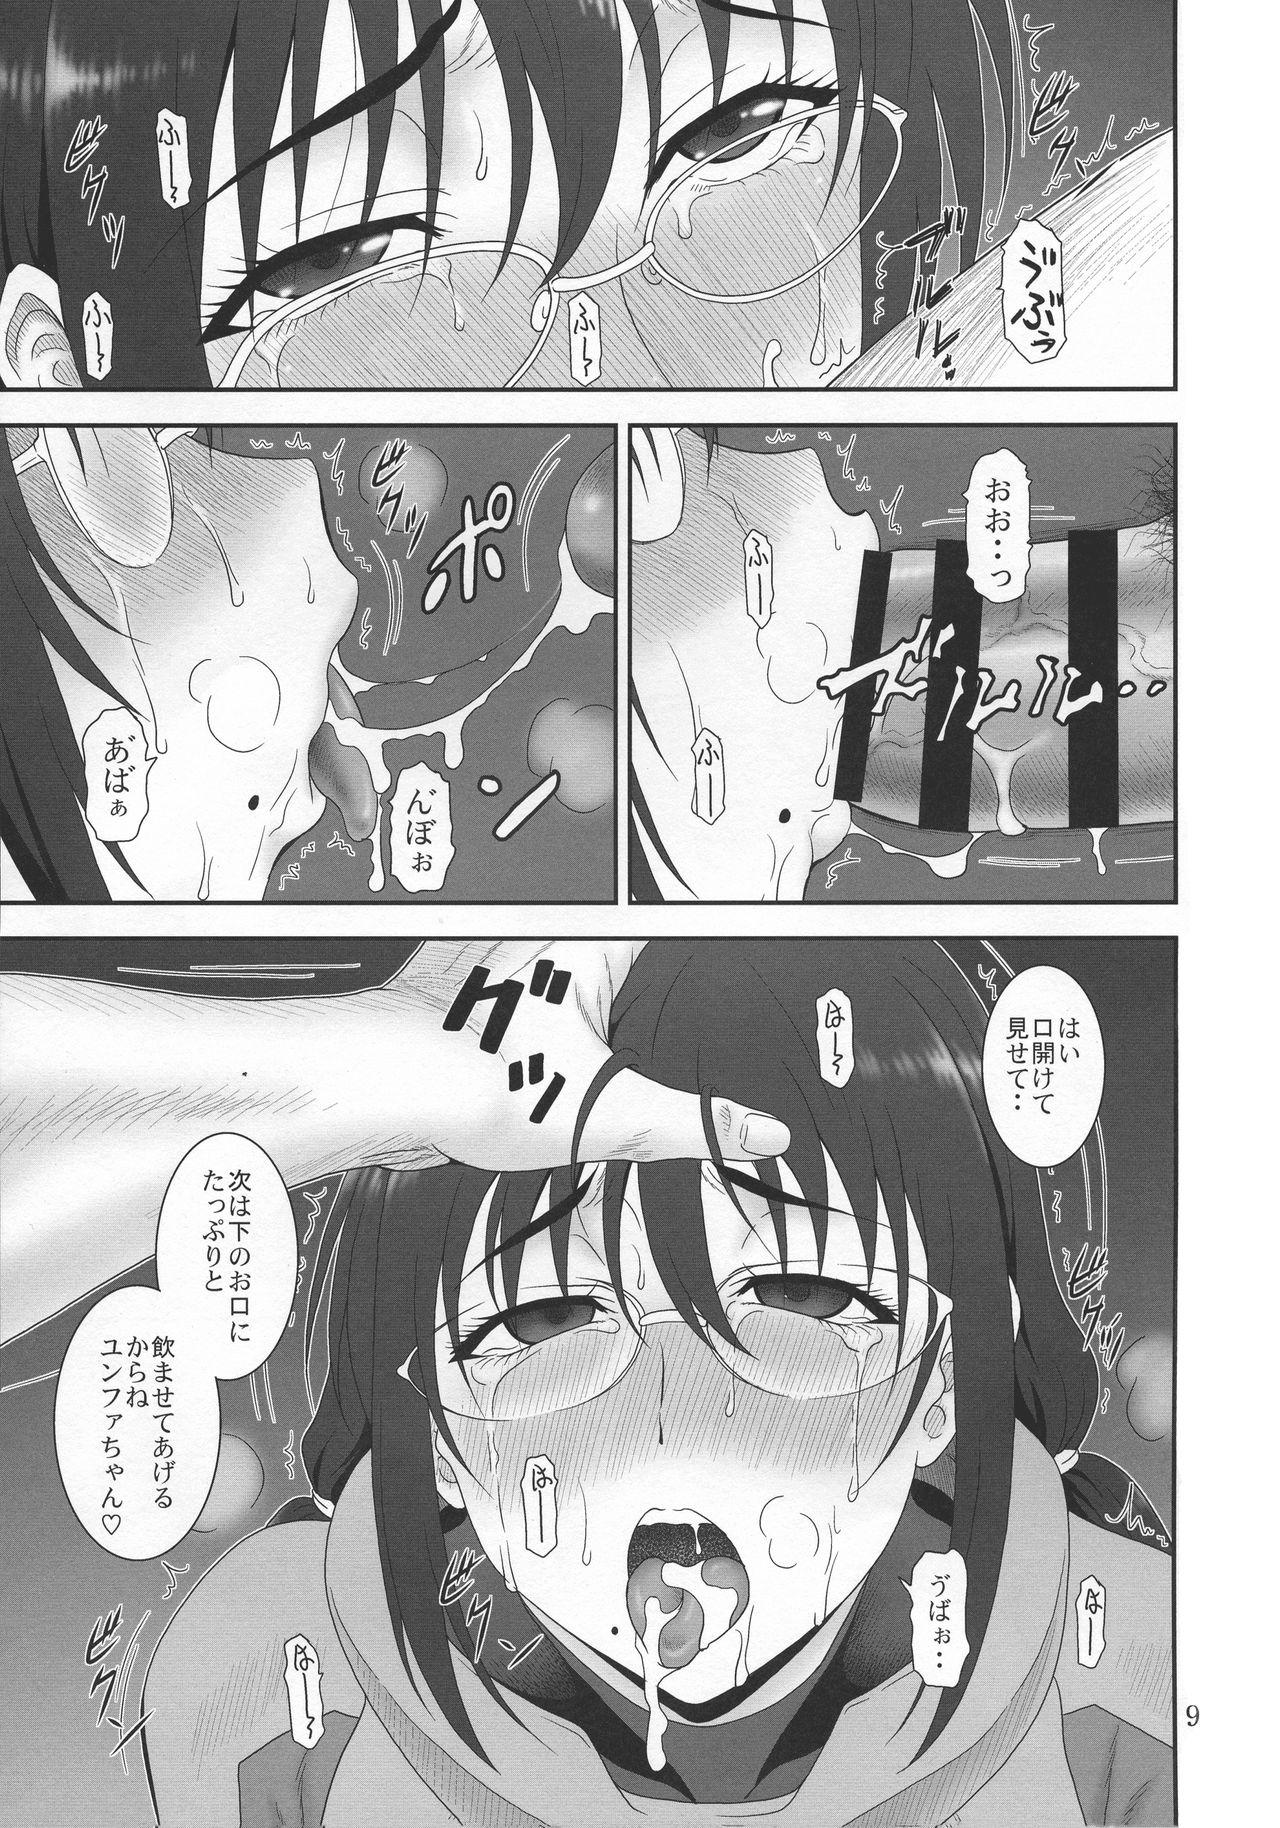 Bikini Kyuukyou no Wakusei - Planet of plight - Kanata no astra Girl Fuck - Page 8